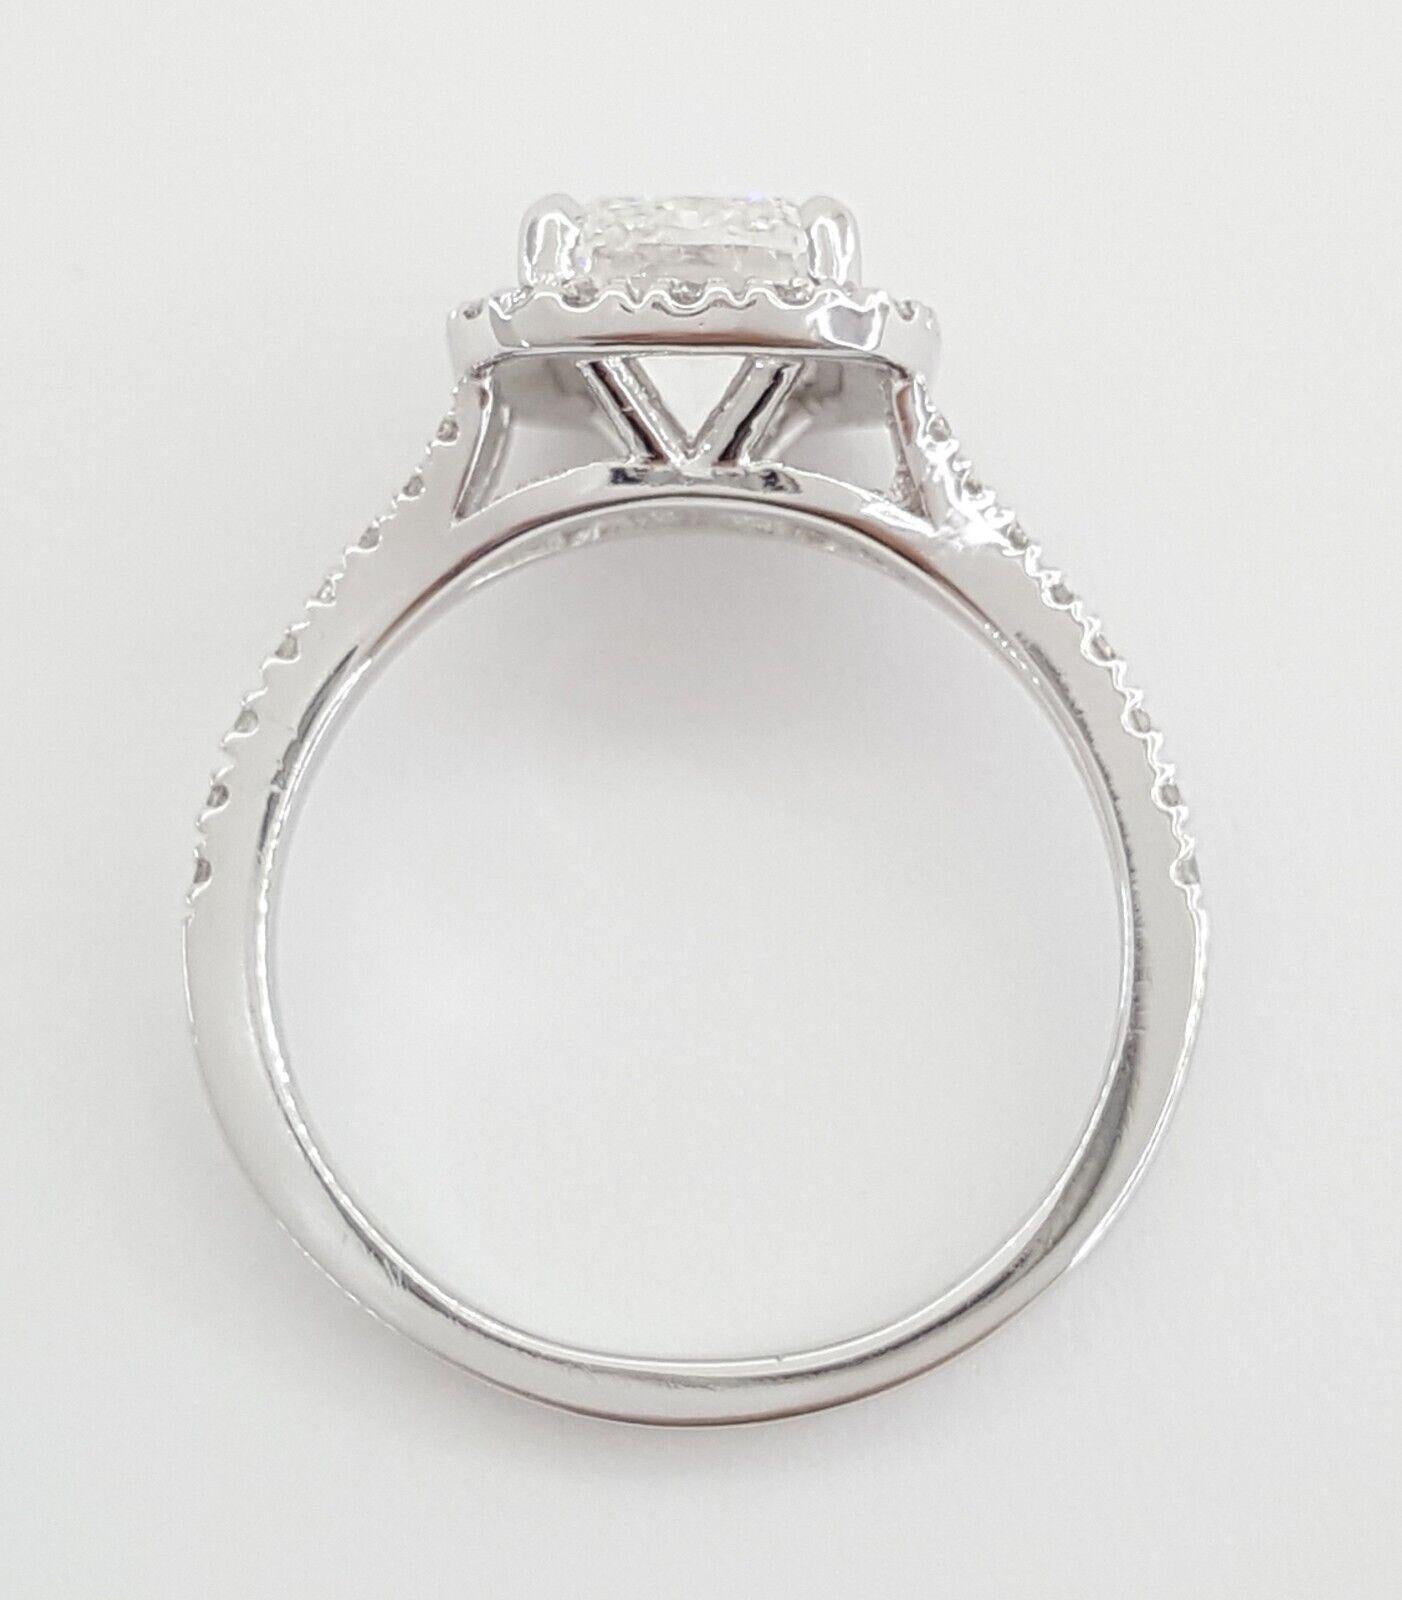 exquisiter Verlobungsring aus Platin mit einem atemberaubenden Halo-Diamanten im länglichen Brillantschliff. Dieses von unserem erfahrenen Juwelier in Perfektion gefertigte Meisterwerk besticht durch Eleganz und Raffinesse.

Dieser Ring in Größe 6,5